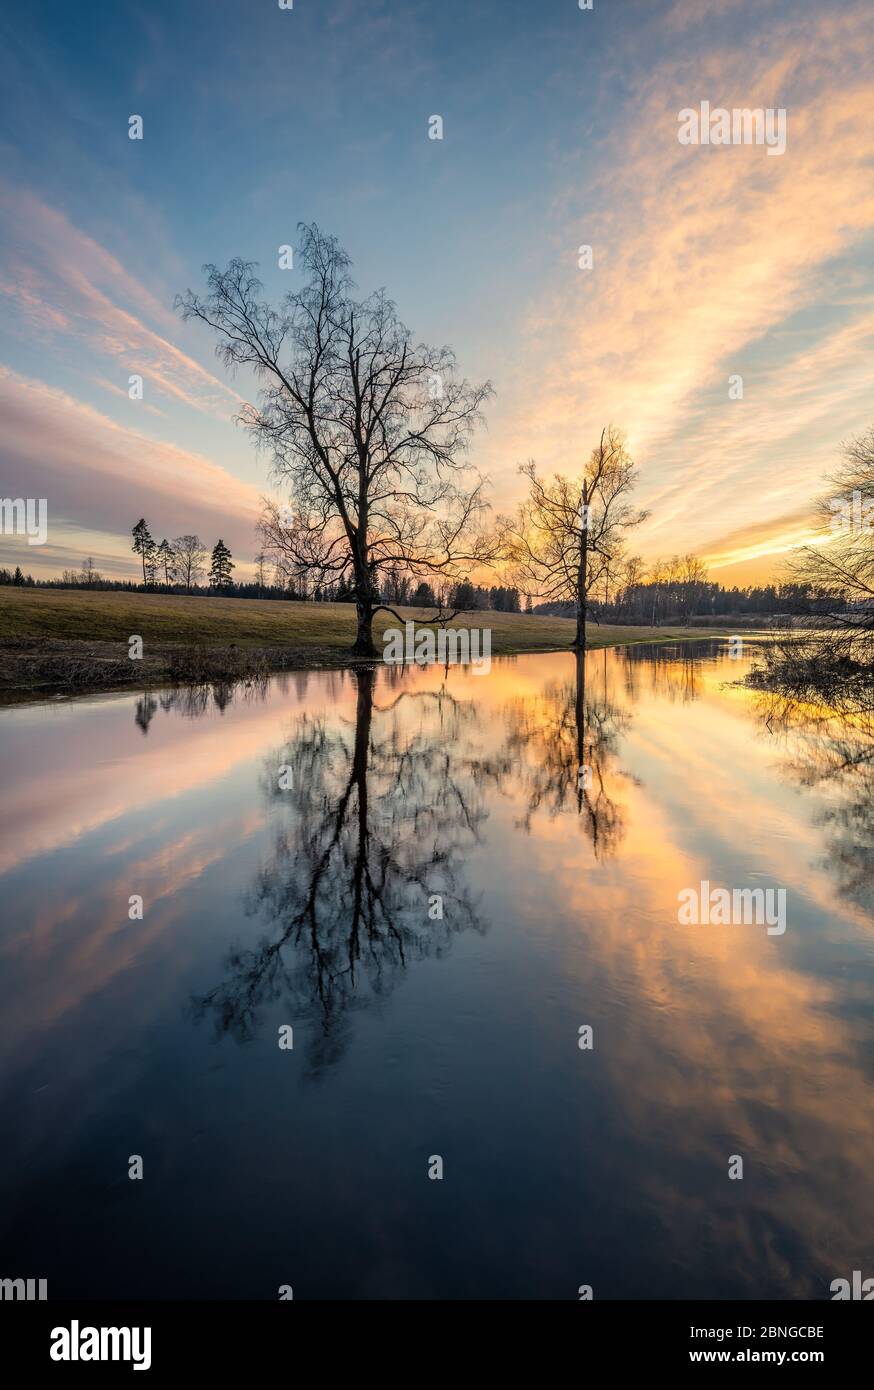 Magnifique coucher de soleil avec paysage calme avec reflets d'arbres et lumière du soleil au printemps soir dans la rivière Finlande Banque D'Images